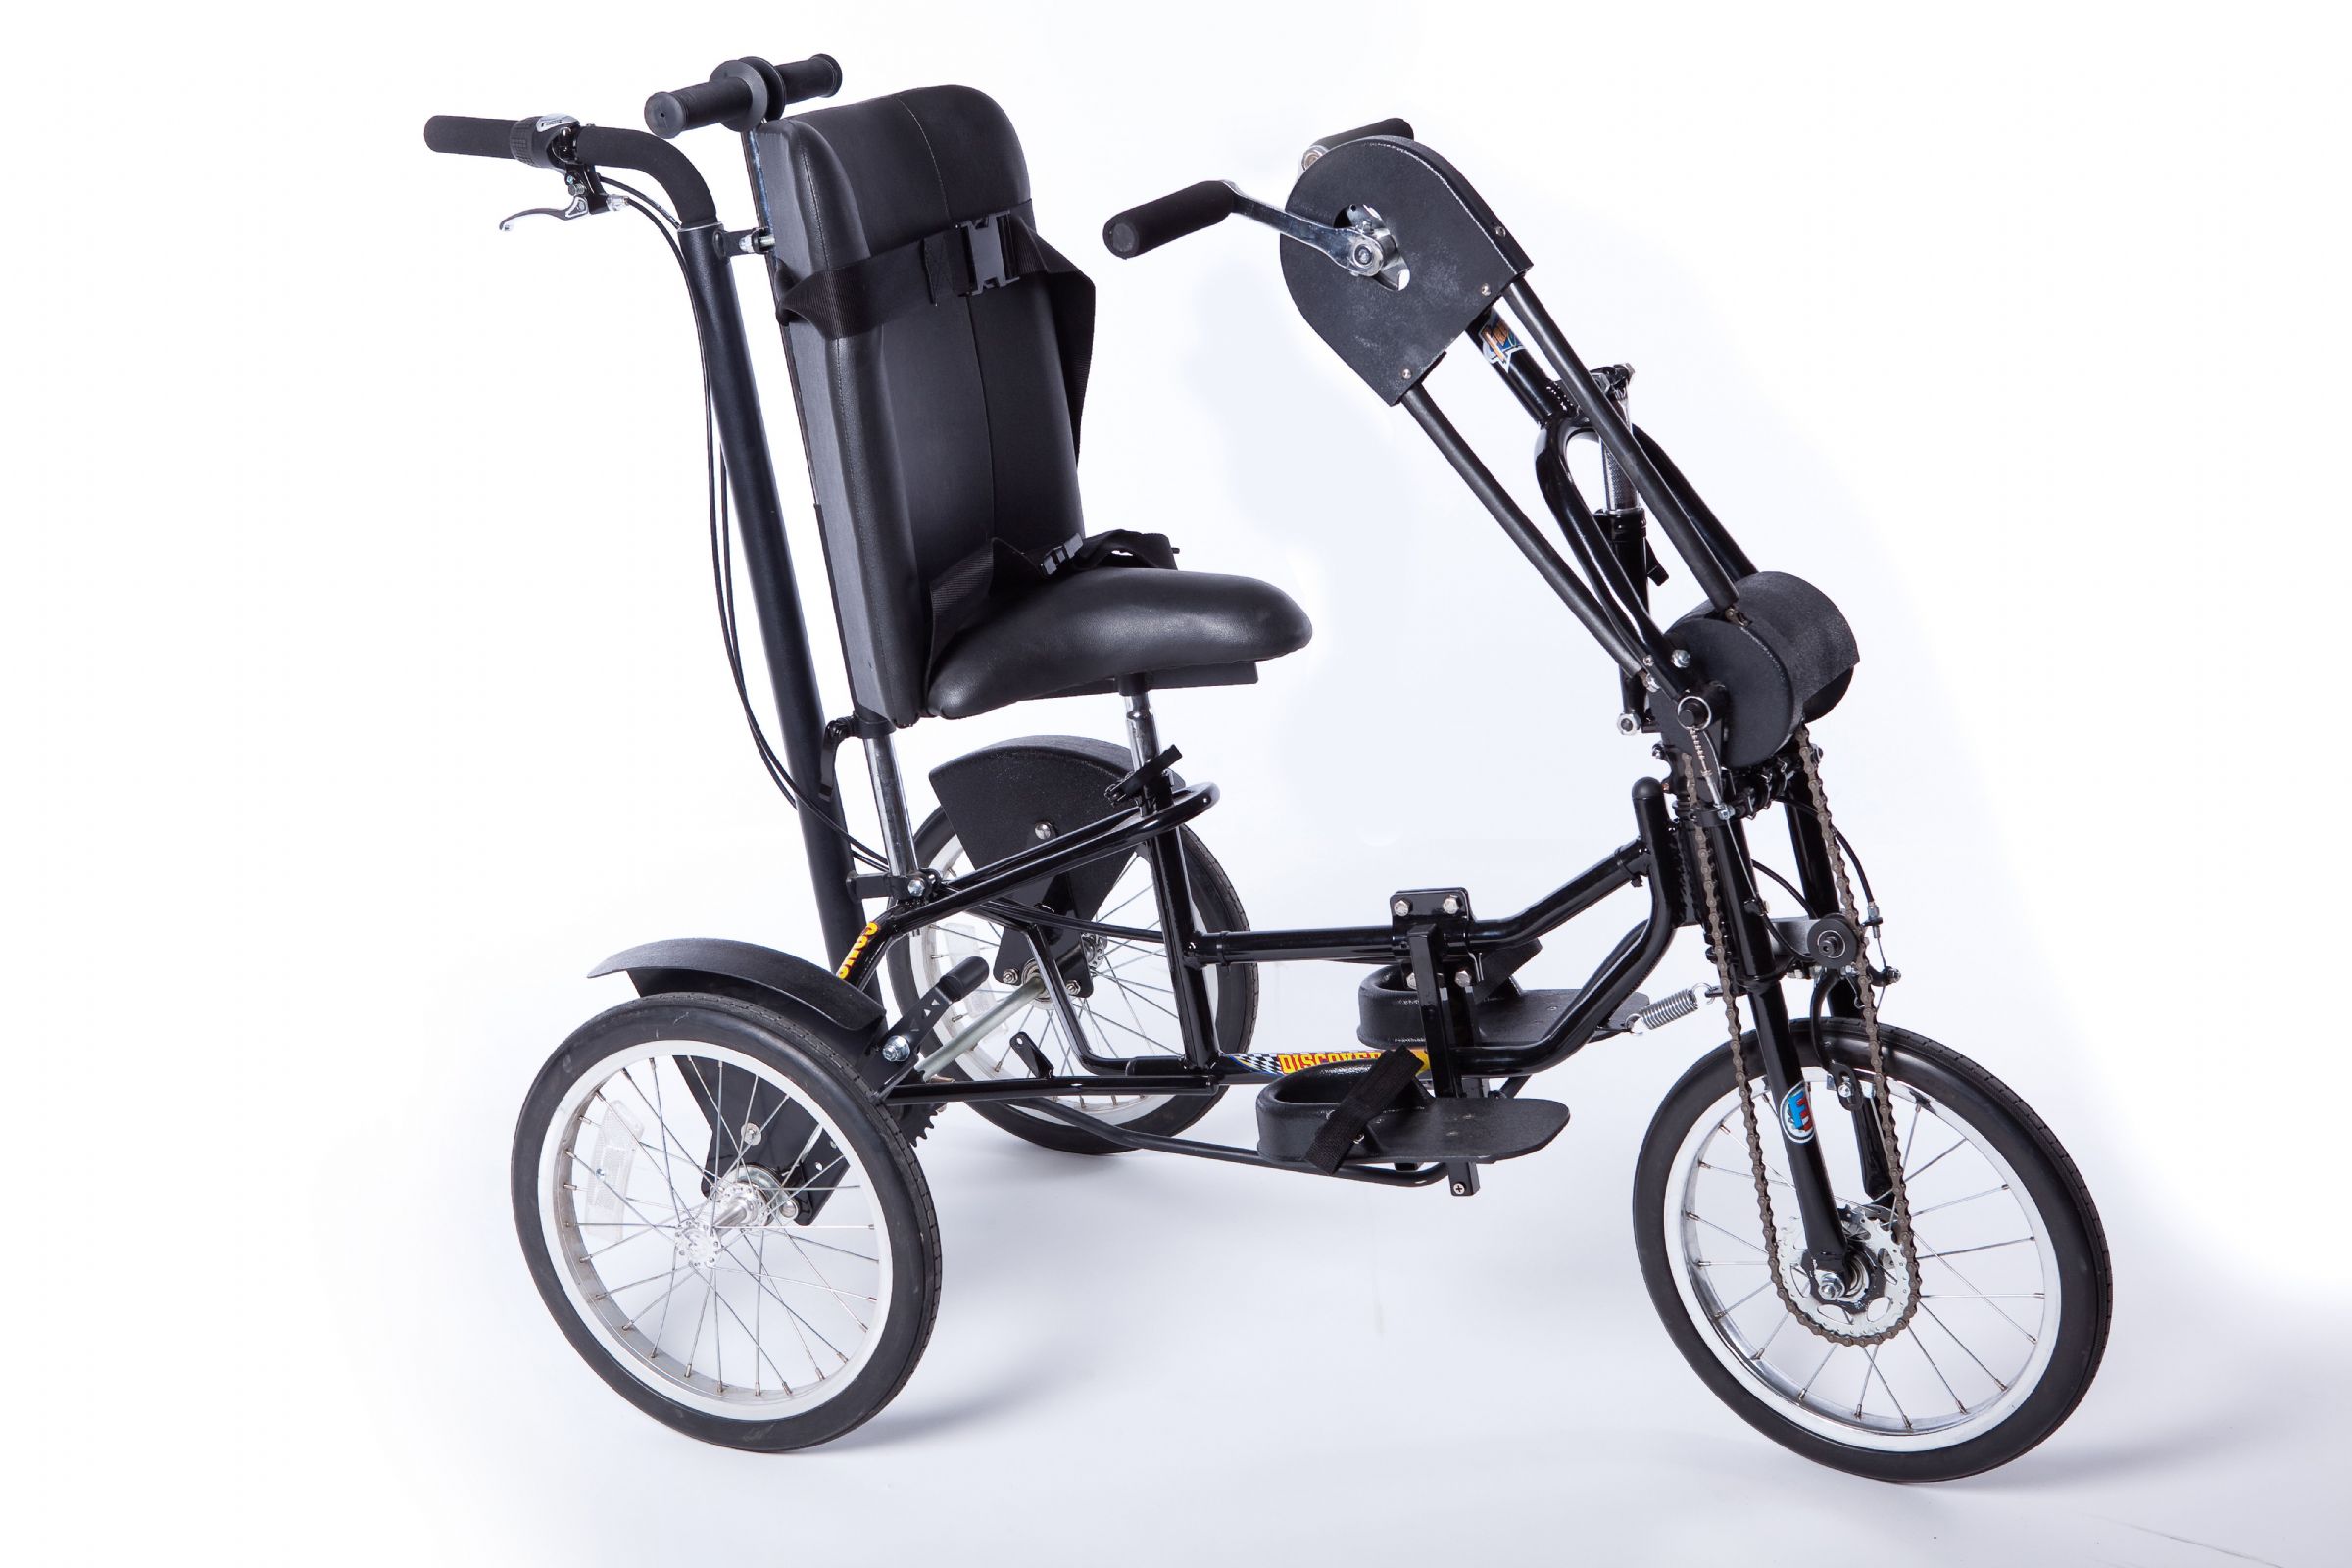 Adjustable Go Kart Pedal and Foot Rest Set Complete Platform Style